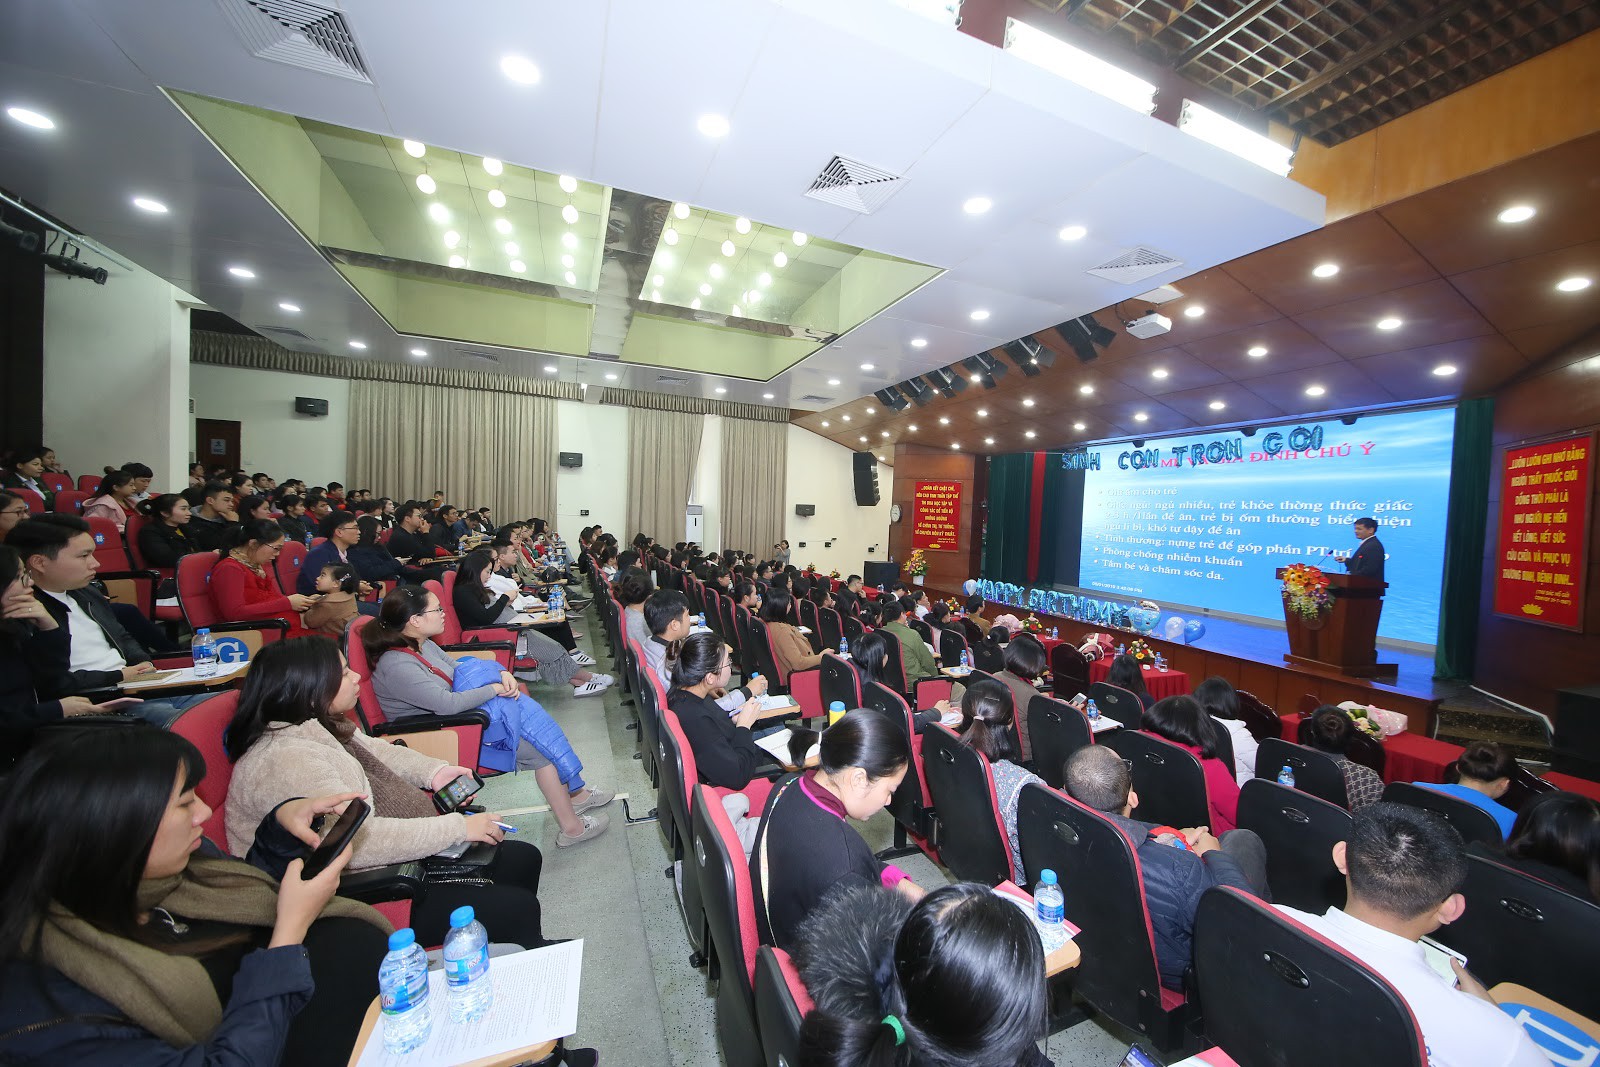 Latex giảm eo made in Việt Nam được giới thiệu hoành tráng tại hội nghị Bệnh viện TƯQĐ 108 - Ảnh 1.